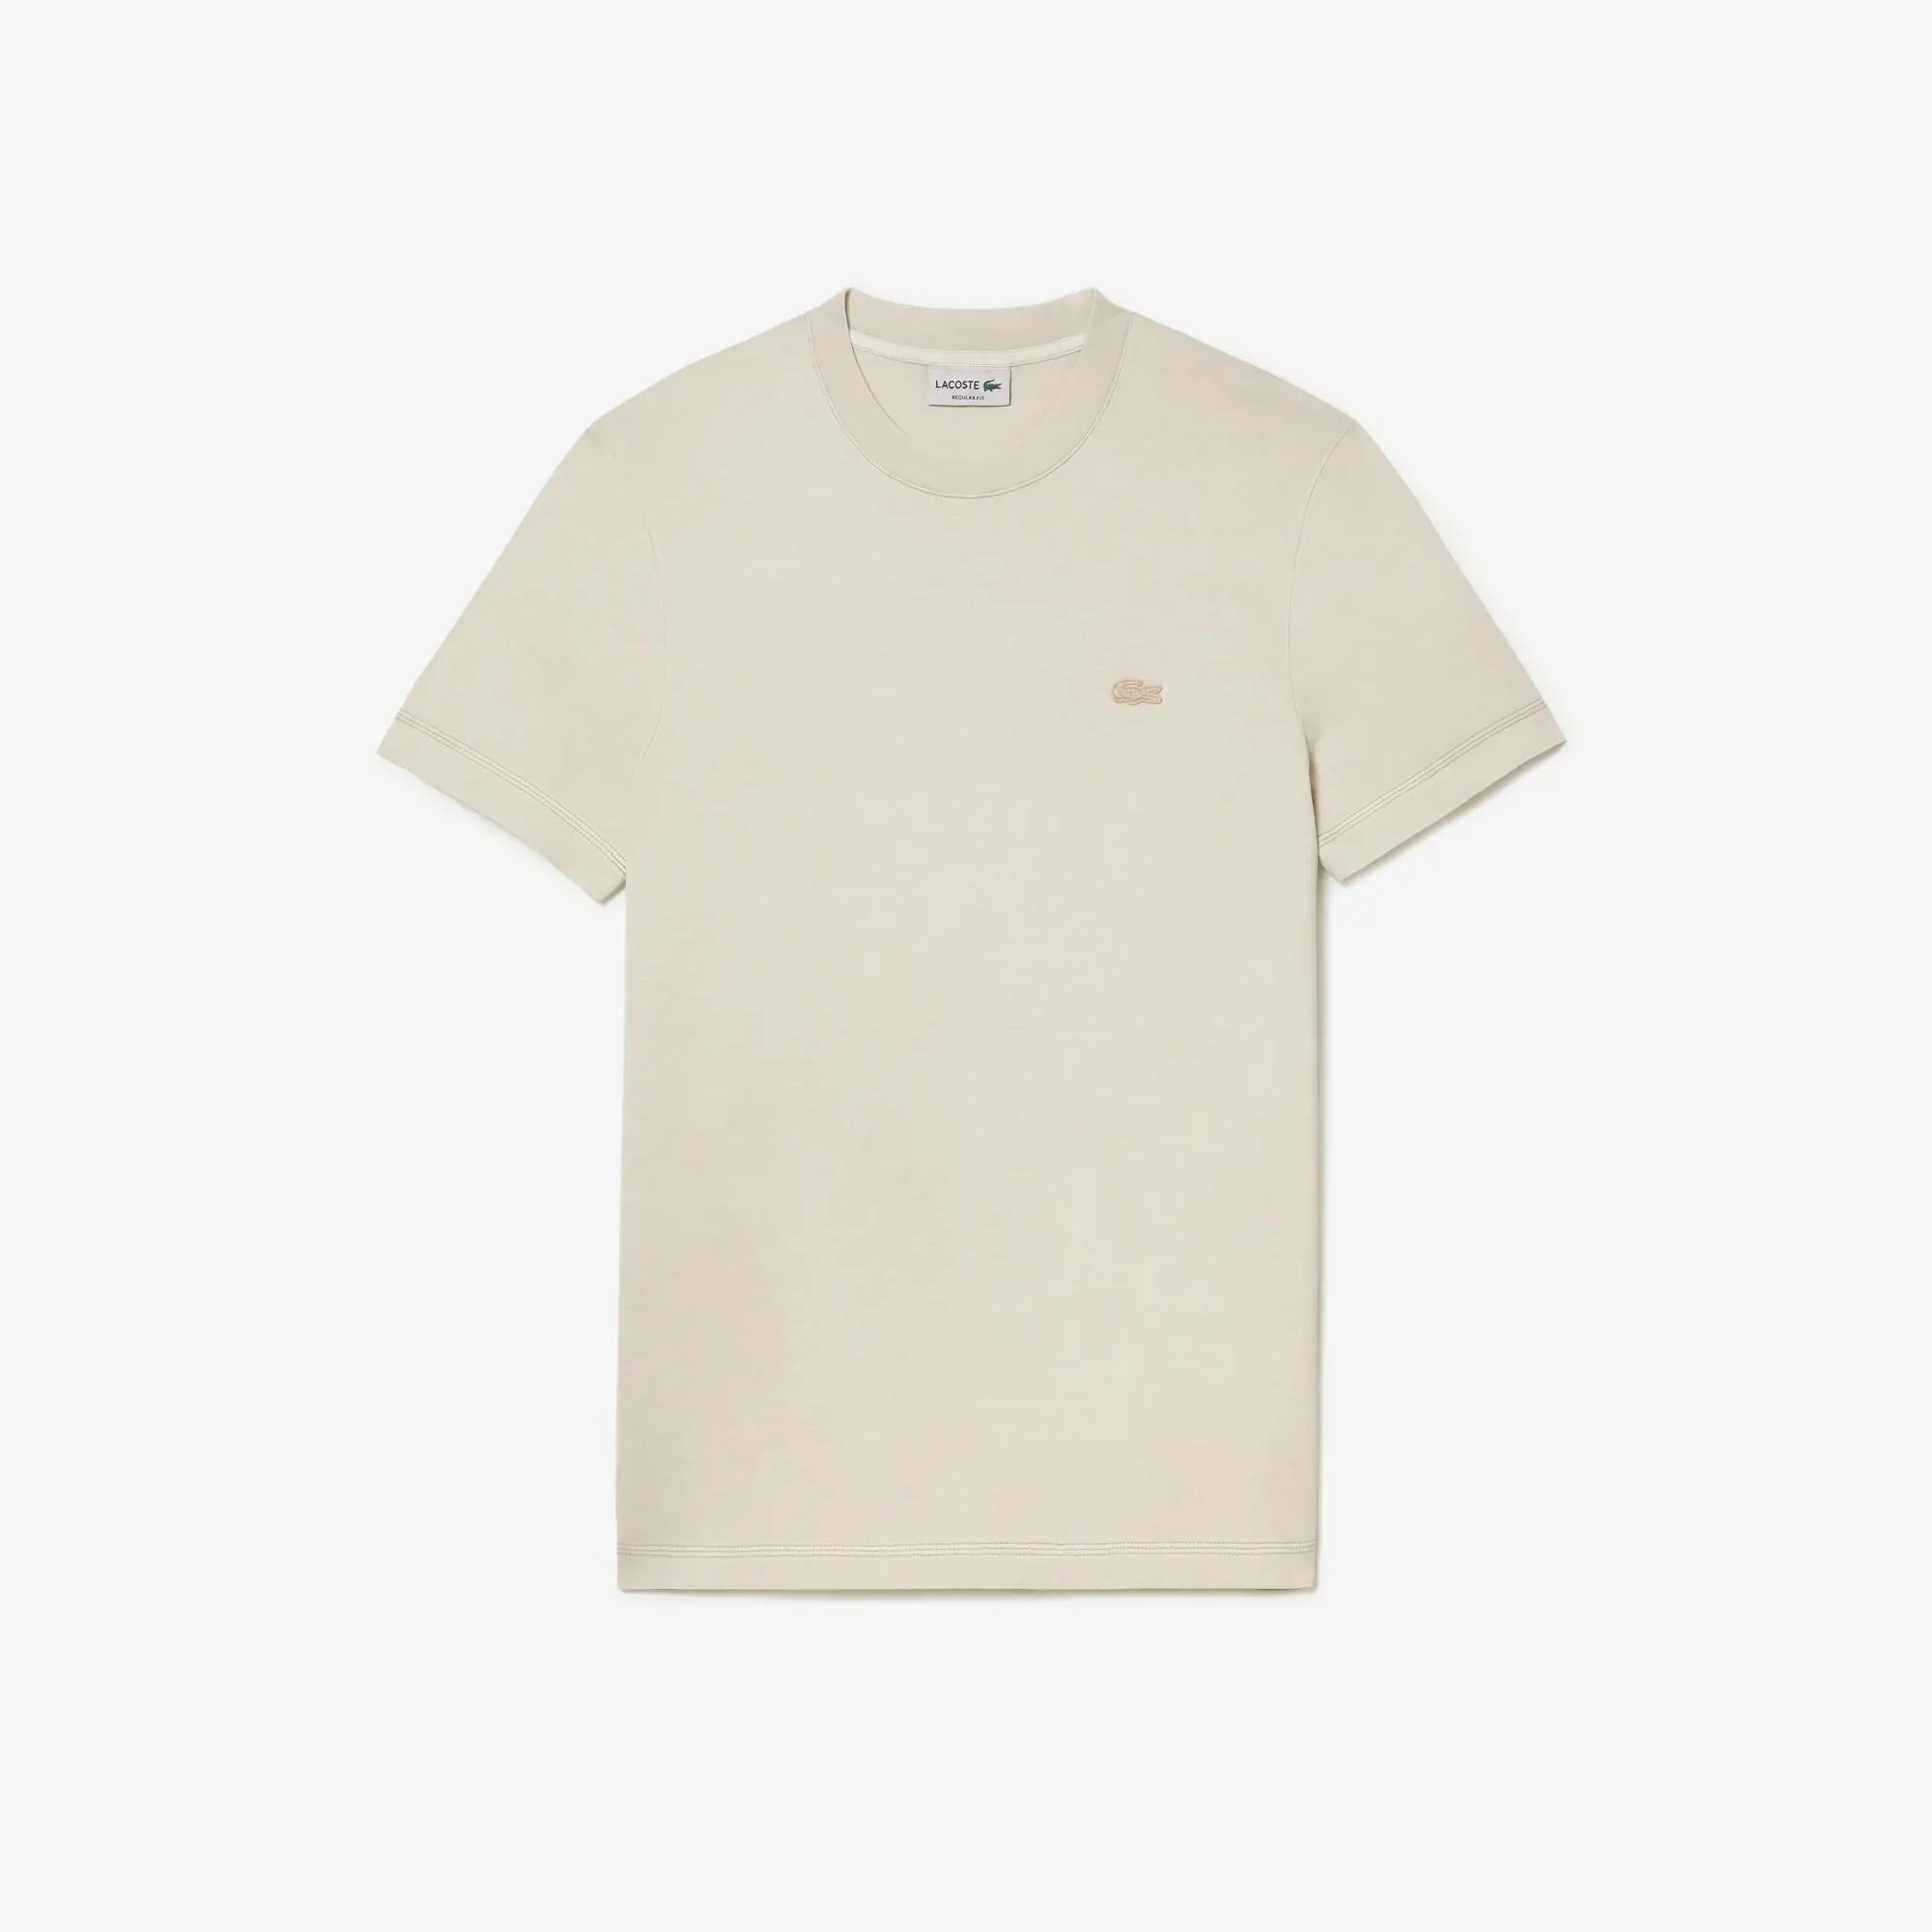 Lacoste Men’s Lacoste Plain Organic Cotton T-shirt. 2